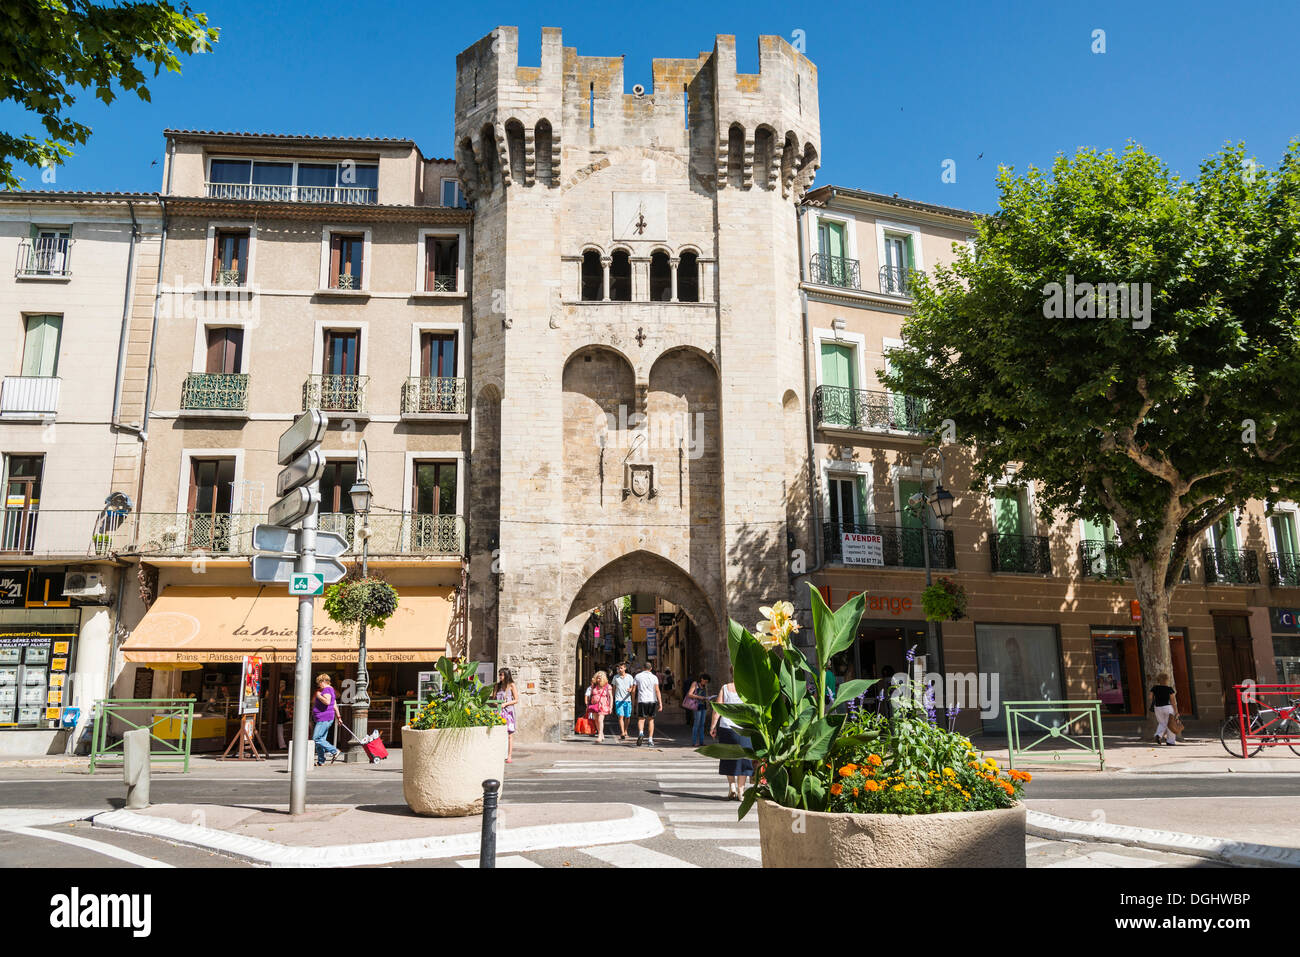 La ville, Manosque, Provence-Alpes-Côte d'Azur, France, Europe Banque D'Images